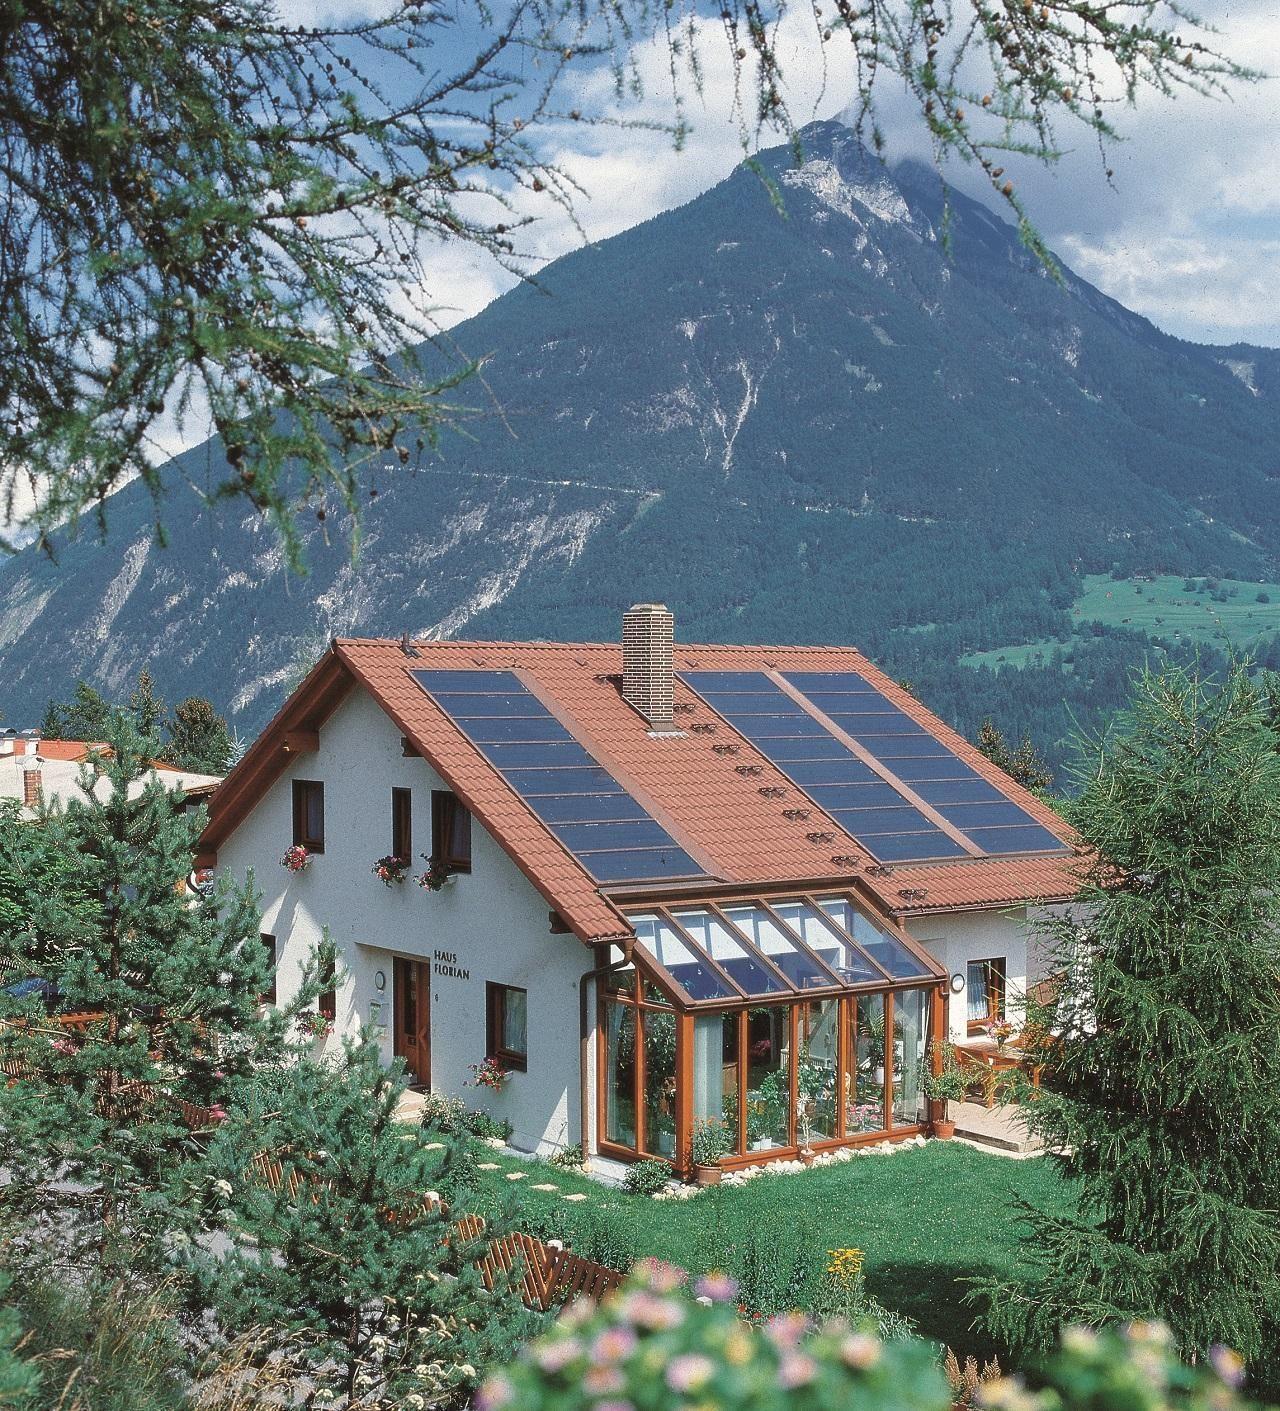 Ferienhaus in Gemeinde Imst mit Garten, Terrasse u Ferienhaus in Österreich